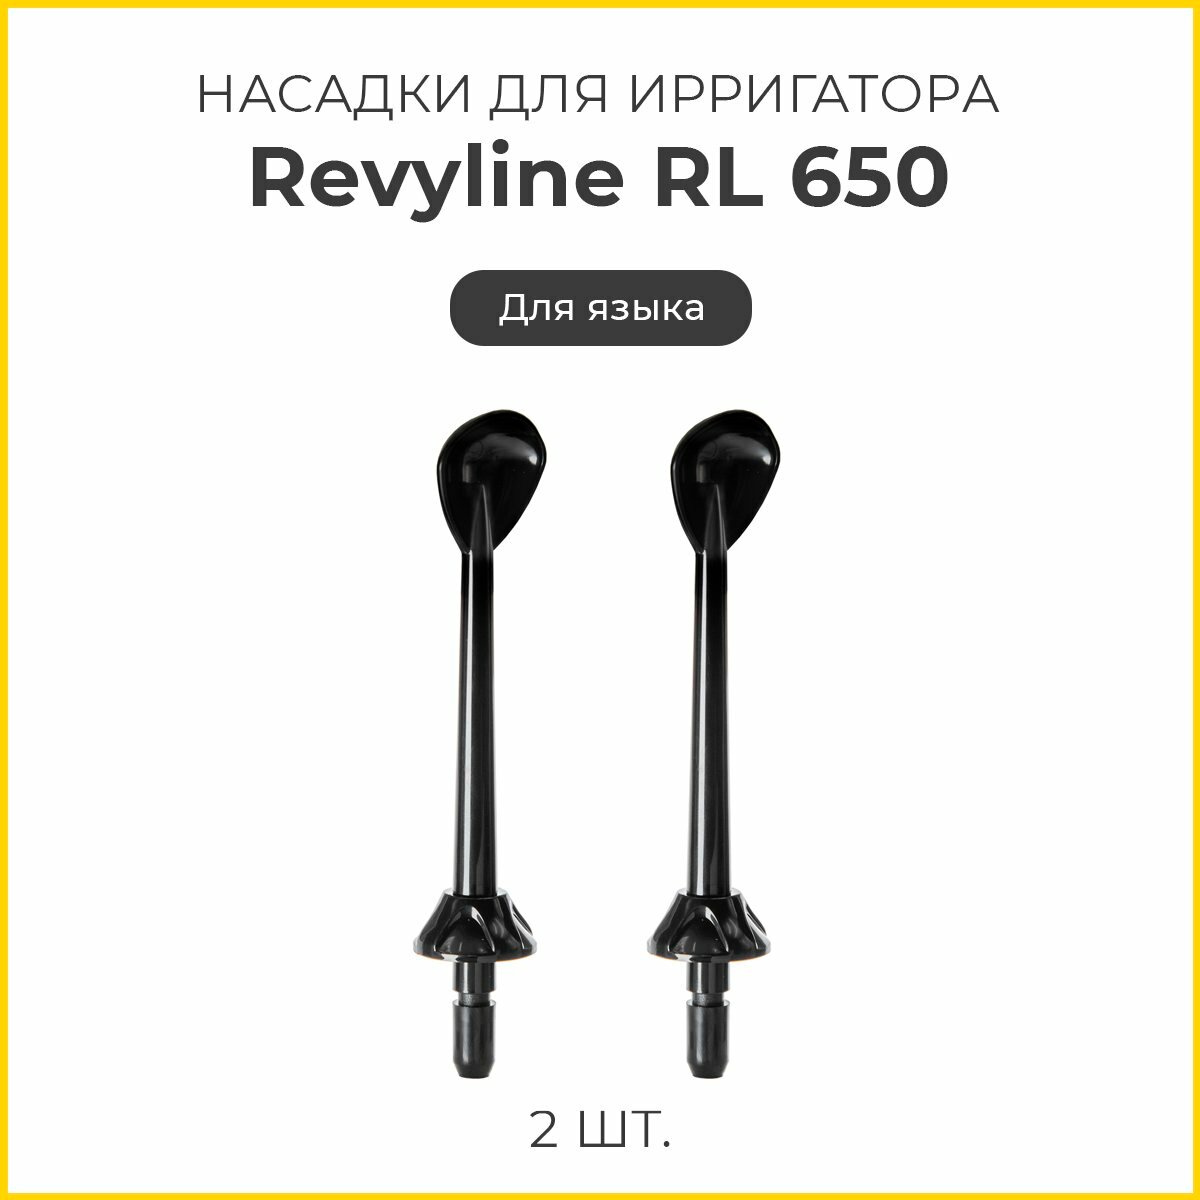 Сменные насадки для ирригатора Revyline RL 650 для языка, черные, 2 шт.